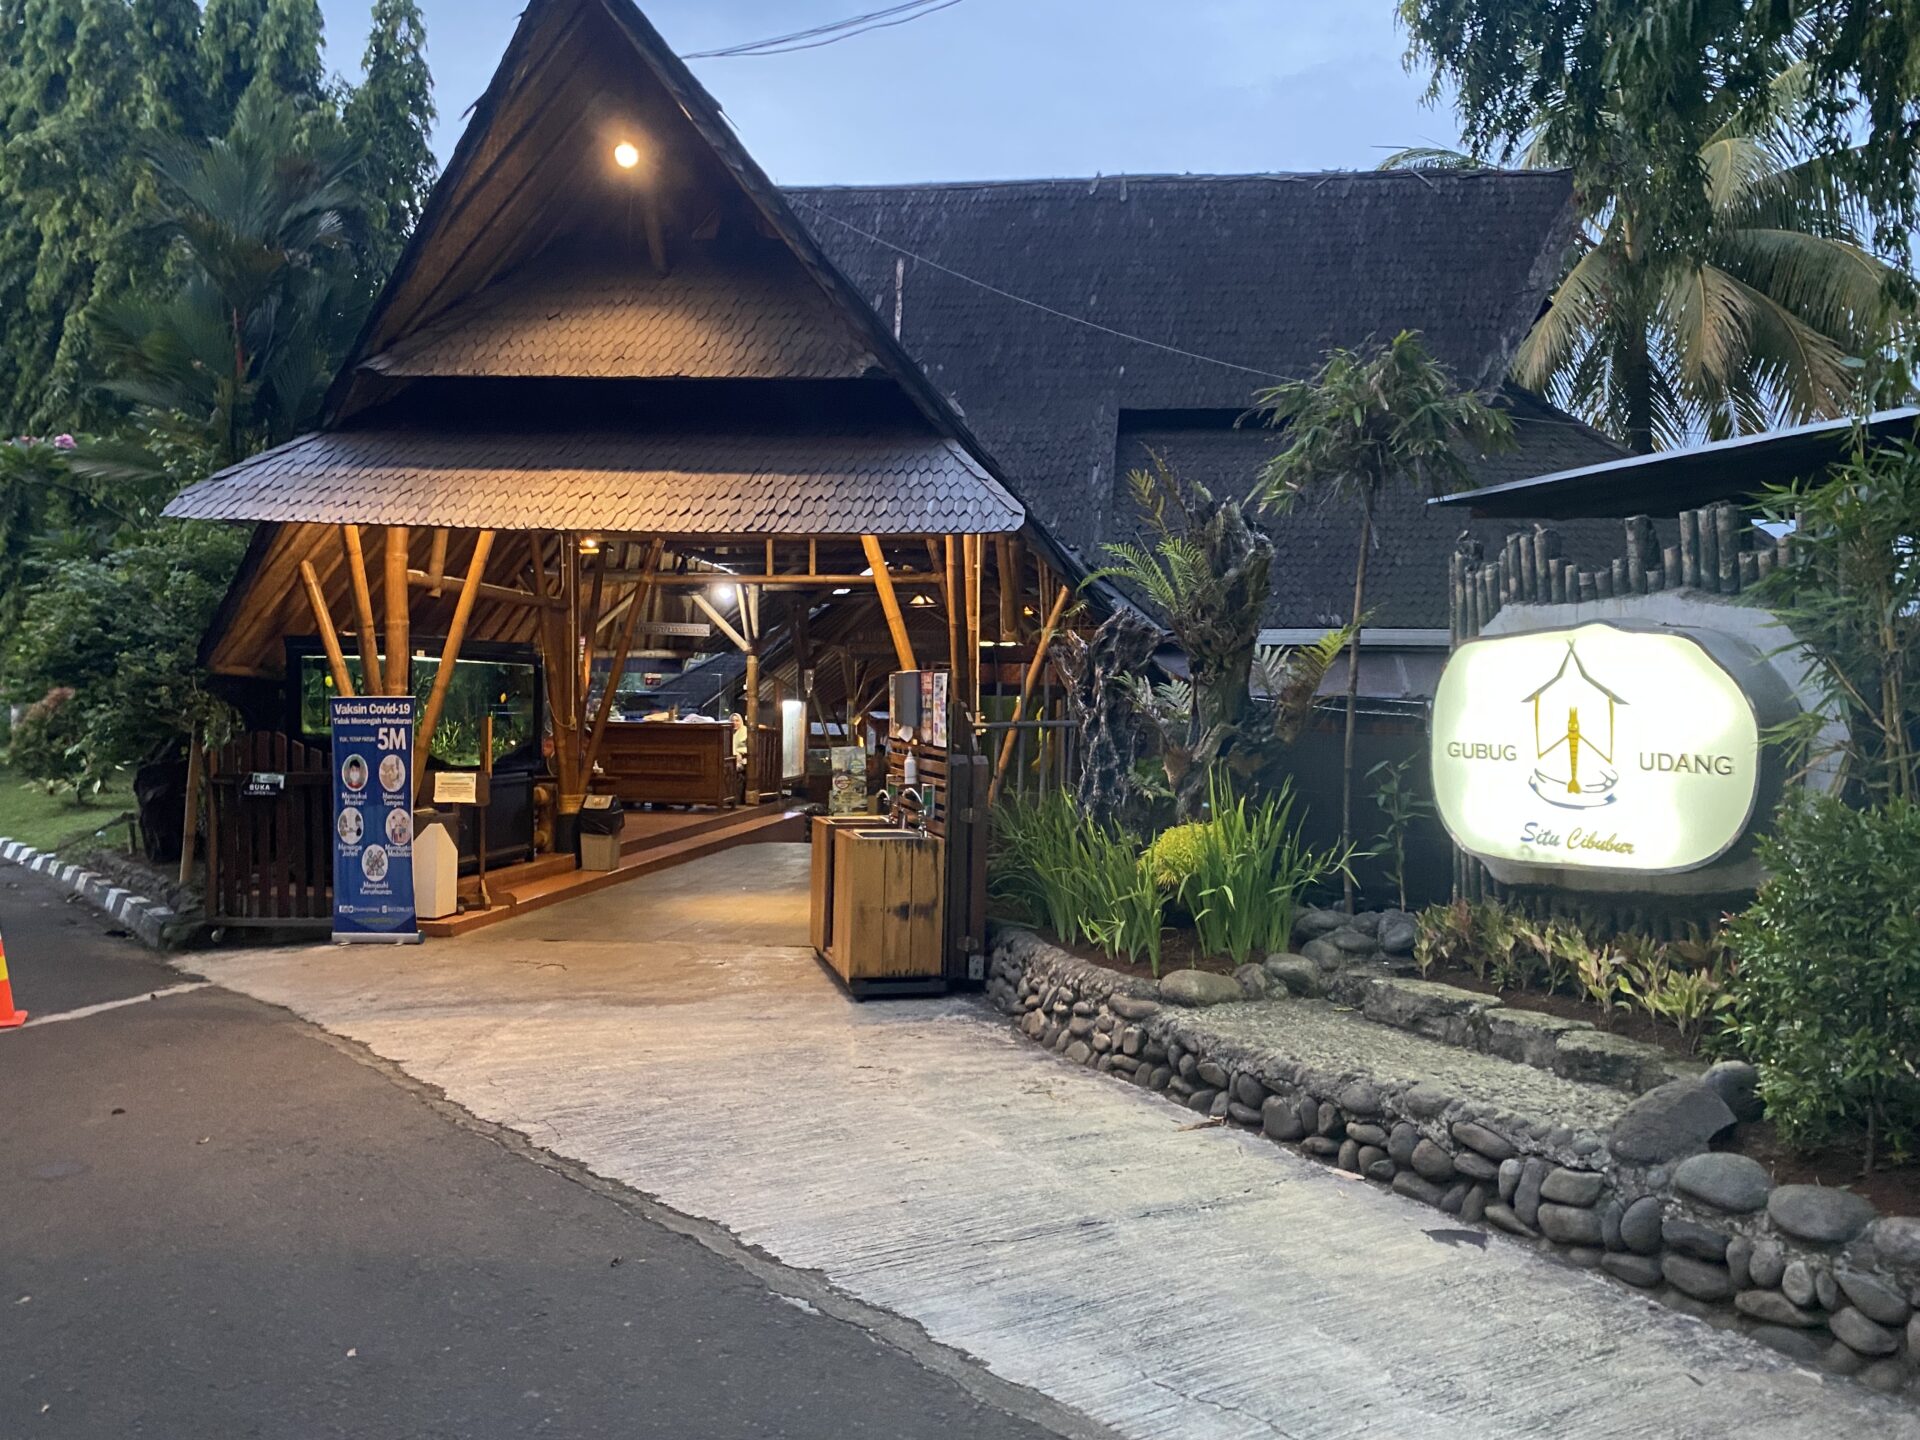 restoran sunda terdekat 22 Restoran Sunda Terdekat Dari Jakarta, Rasa Otentik Dijamin Raos Pisan!